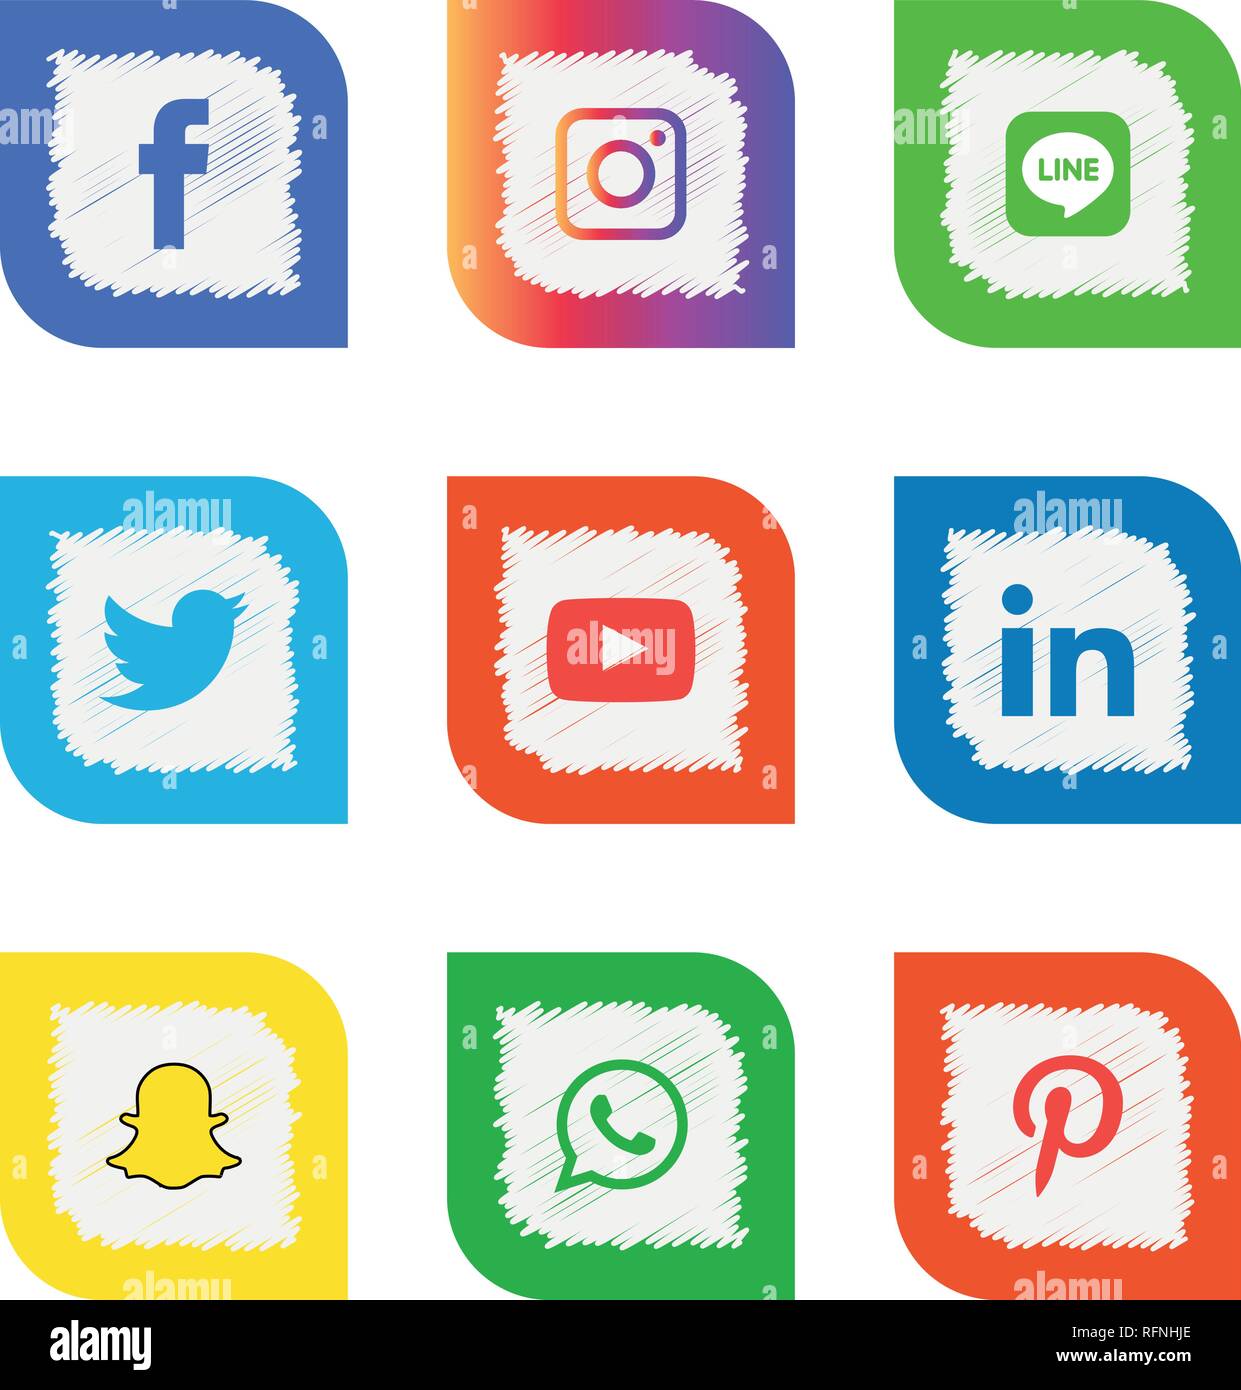 Social media icons set Logo Vector Illustrator facebook, instagram,  twitter, whatsapp, google plus, google+, pinterest, linkedin, messenger  Stock Vector Image & Art - Alamy